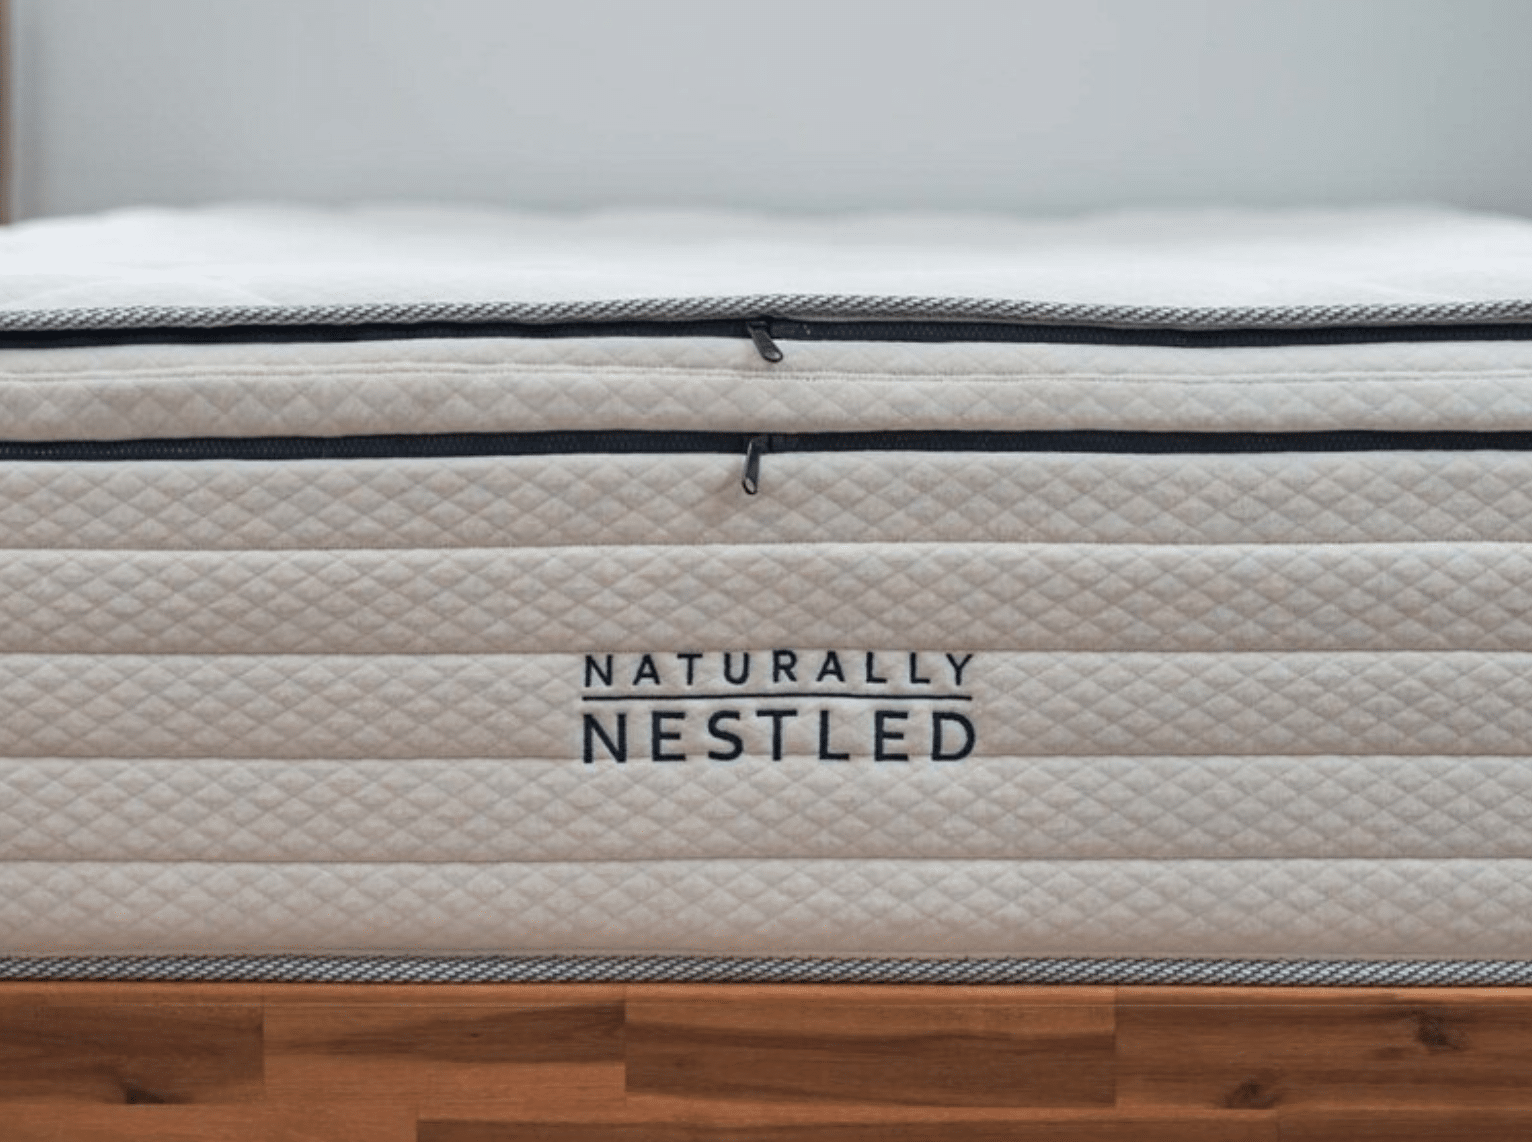 A Naturally Nestled mattress
